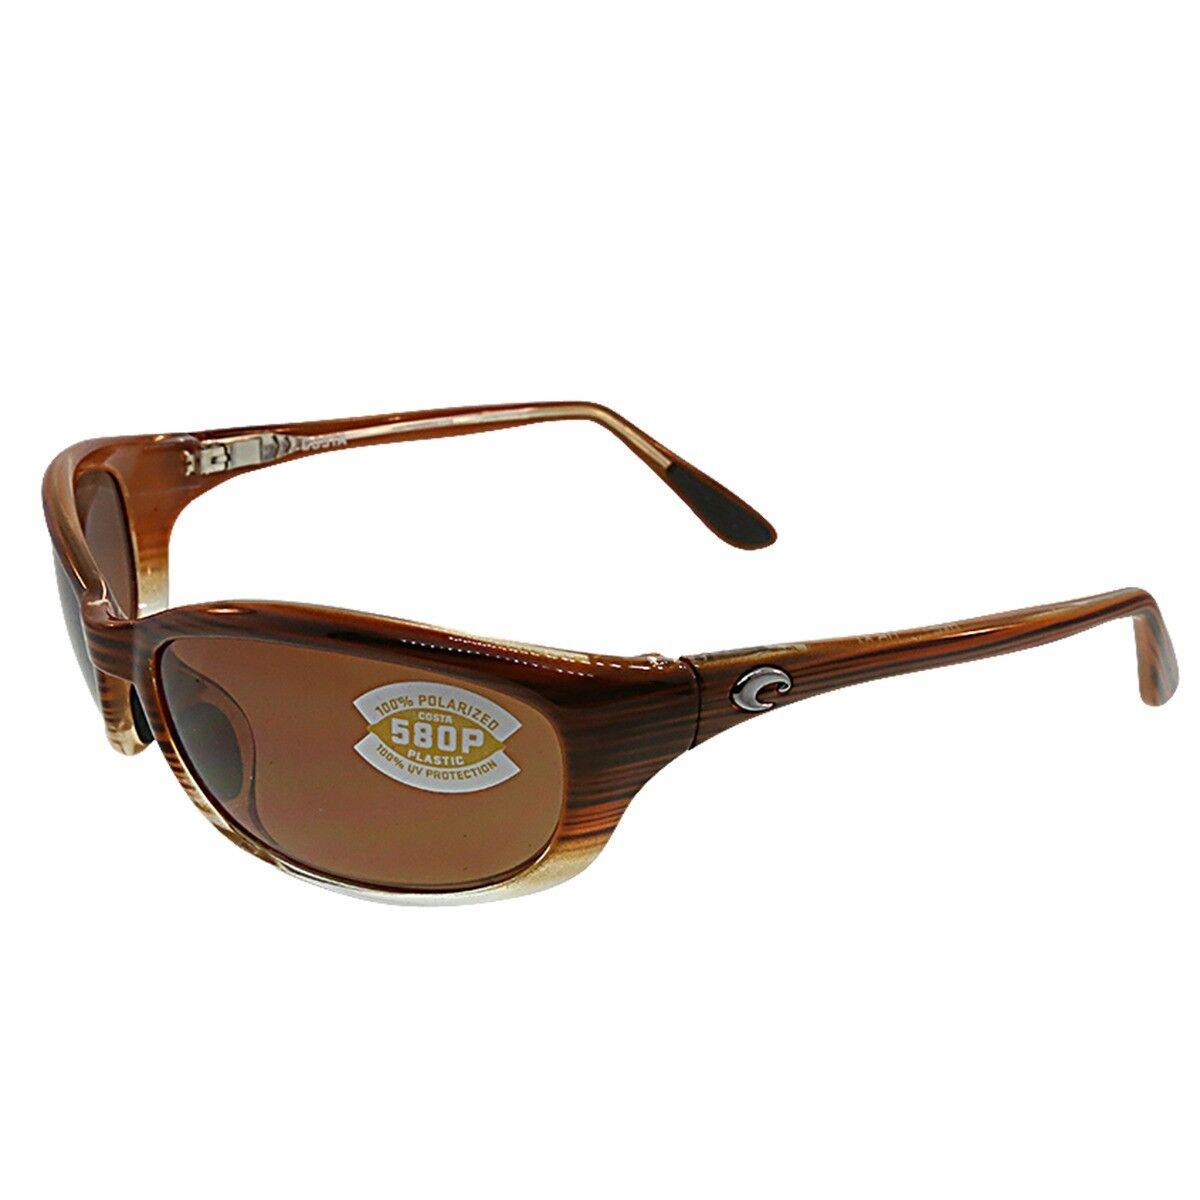 Costa Del Mar Polarized Sunglasses HR 81 Ocp